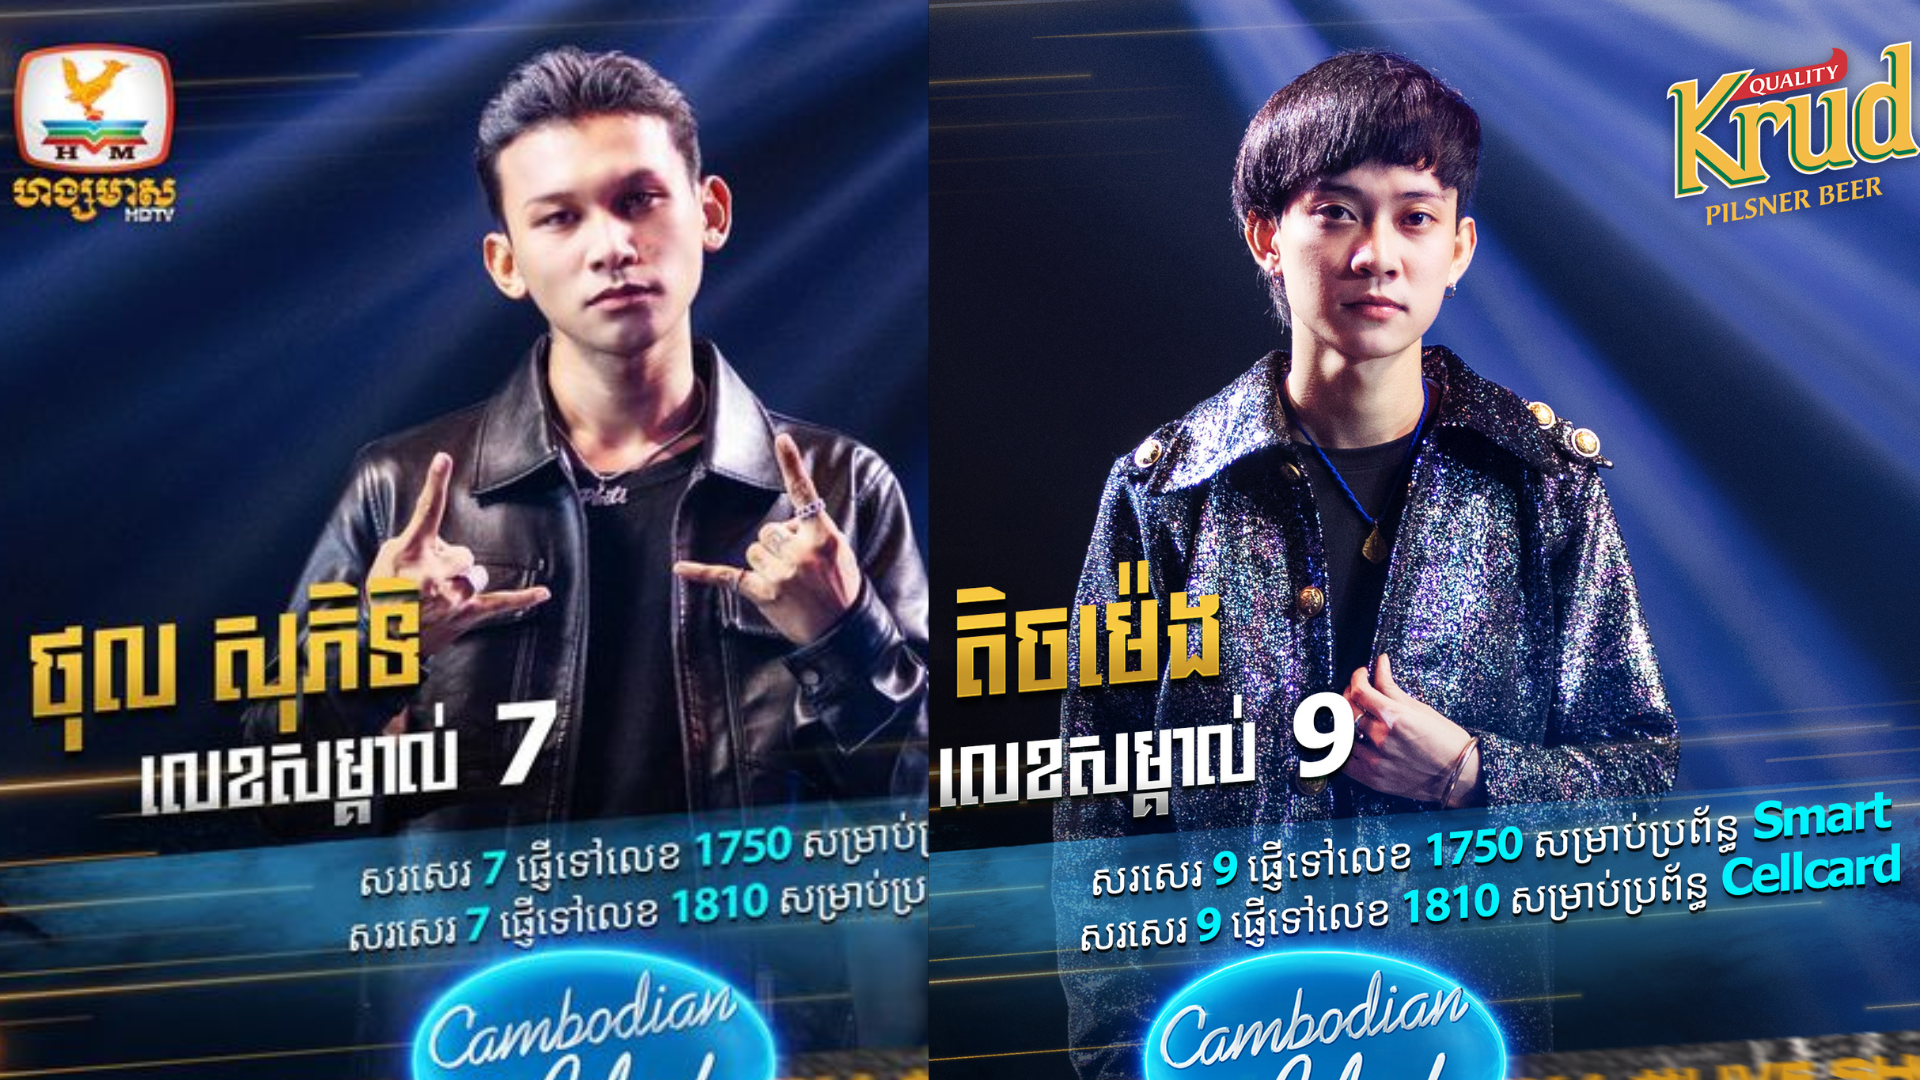 ថុល សុភិទិ និង លឹម តិចម៉េង នៅតែរក្សាដំណែងជាបេក្ខជនទទួលបានការ Vote កំពូលនៃកម្មវិធី Cambodian Idol រដូវកាលថ្មីនេះ